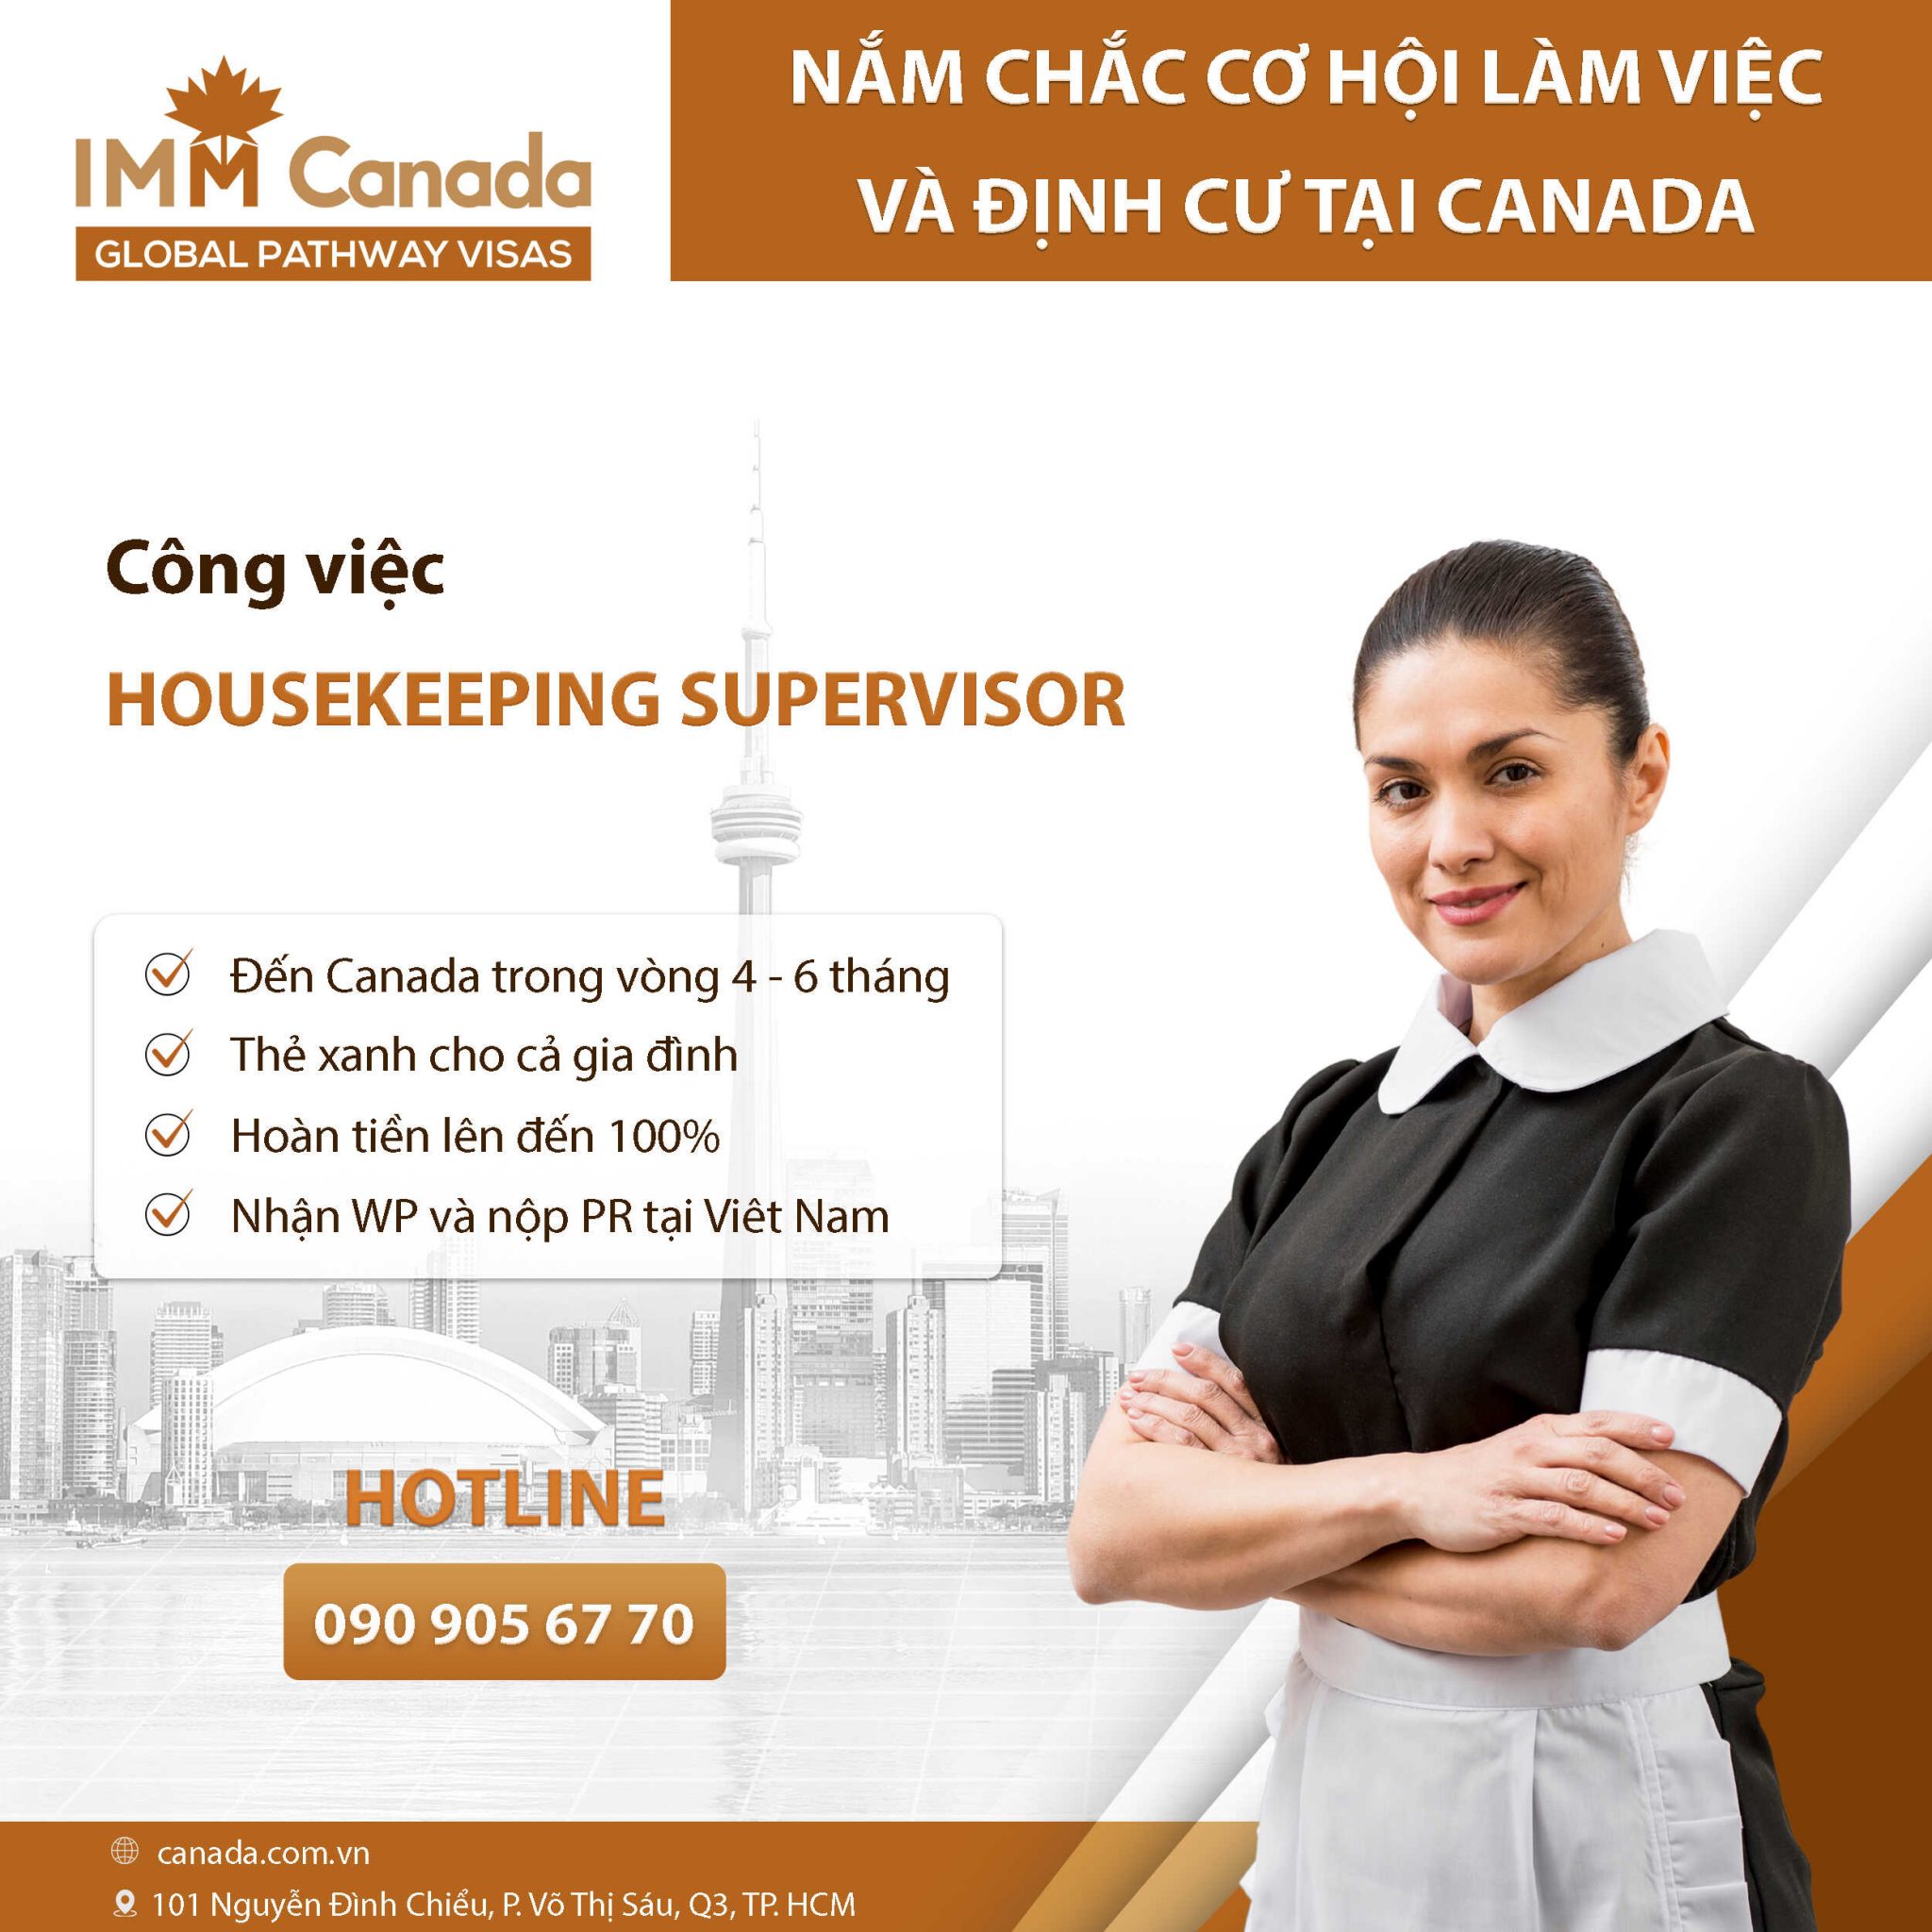 Định cư Canada diện tay nghề lĩnh vực F&B - Housekeeping Supervisor